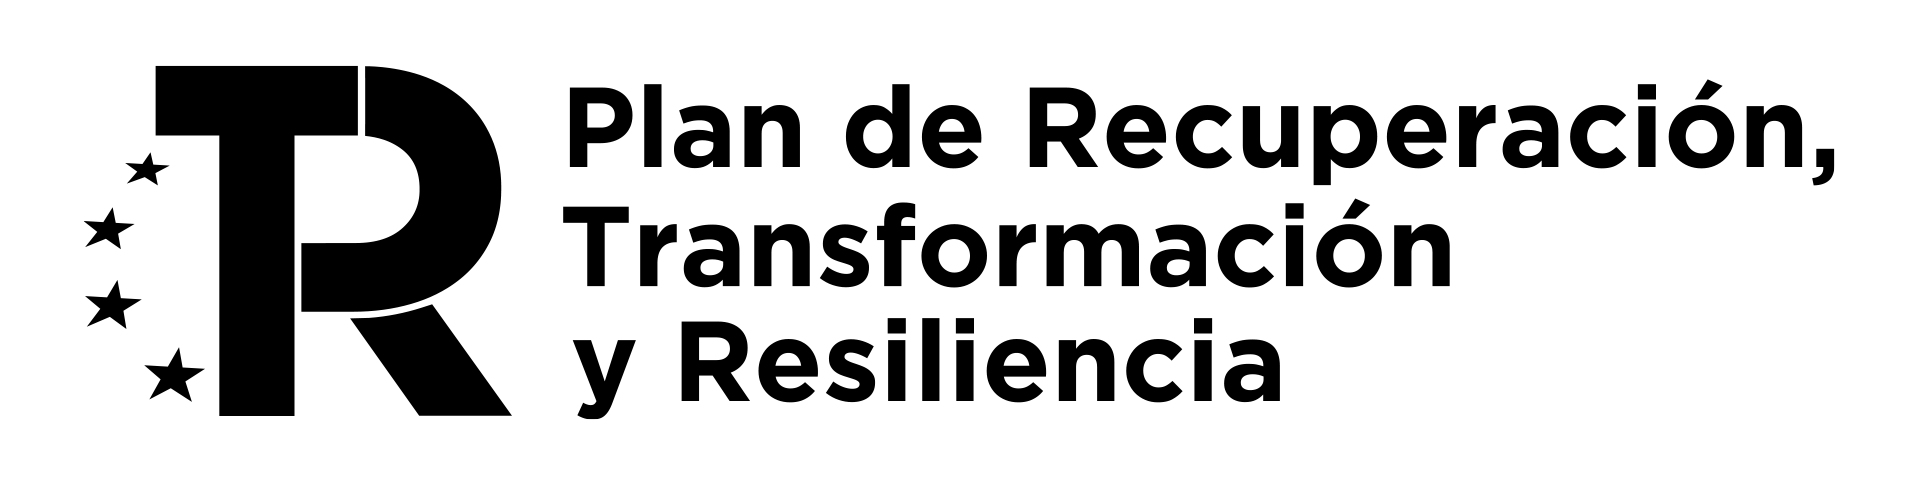 Logo-PRTR-tres-l